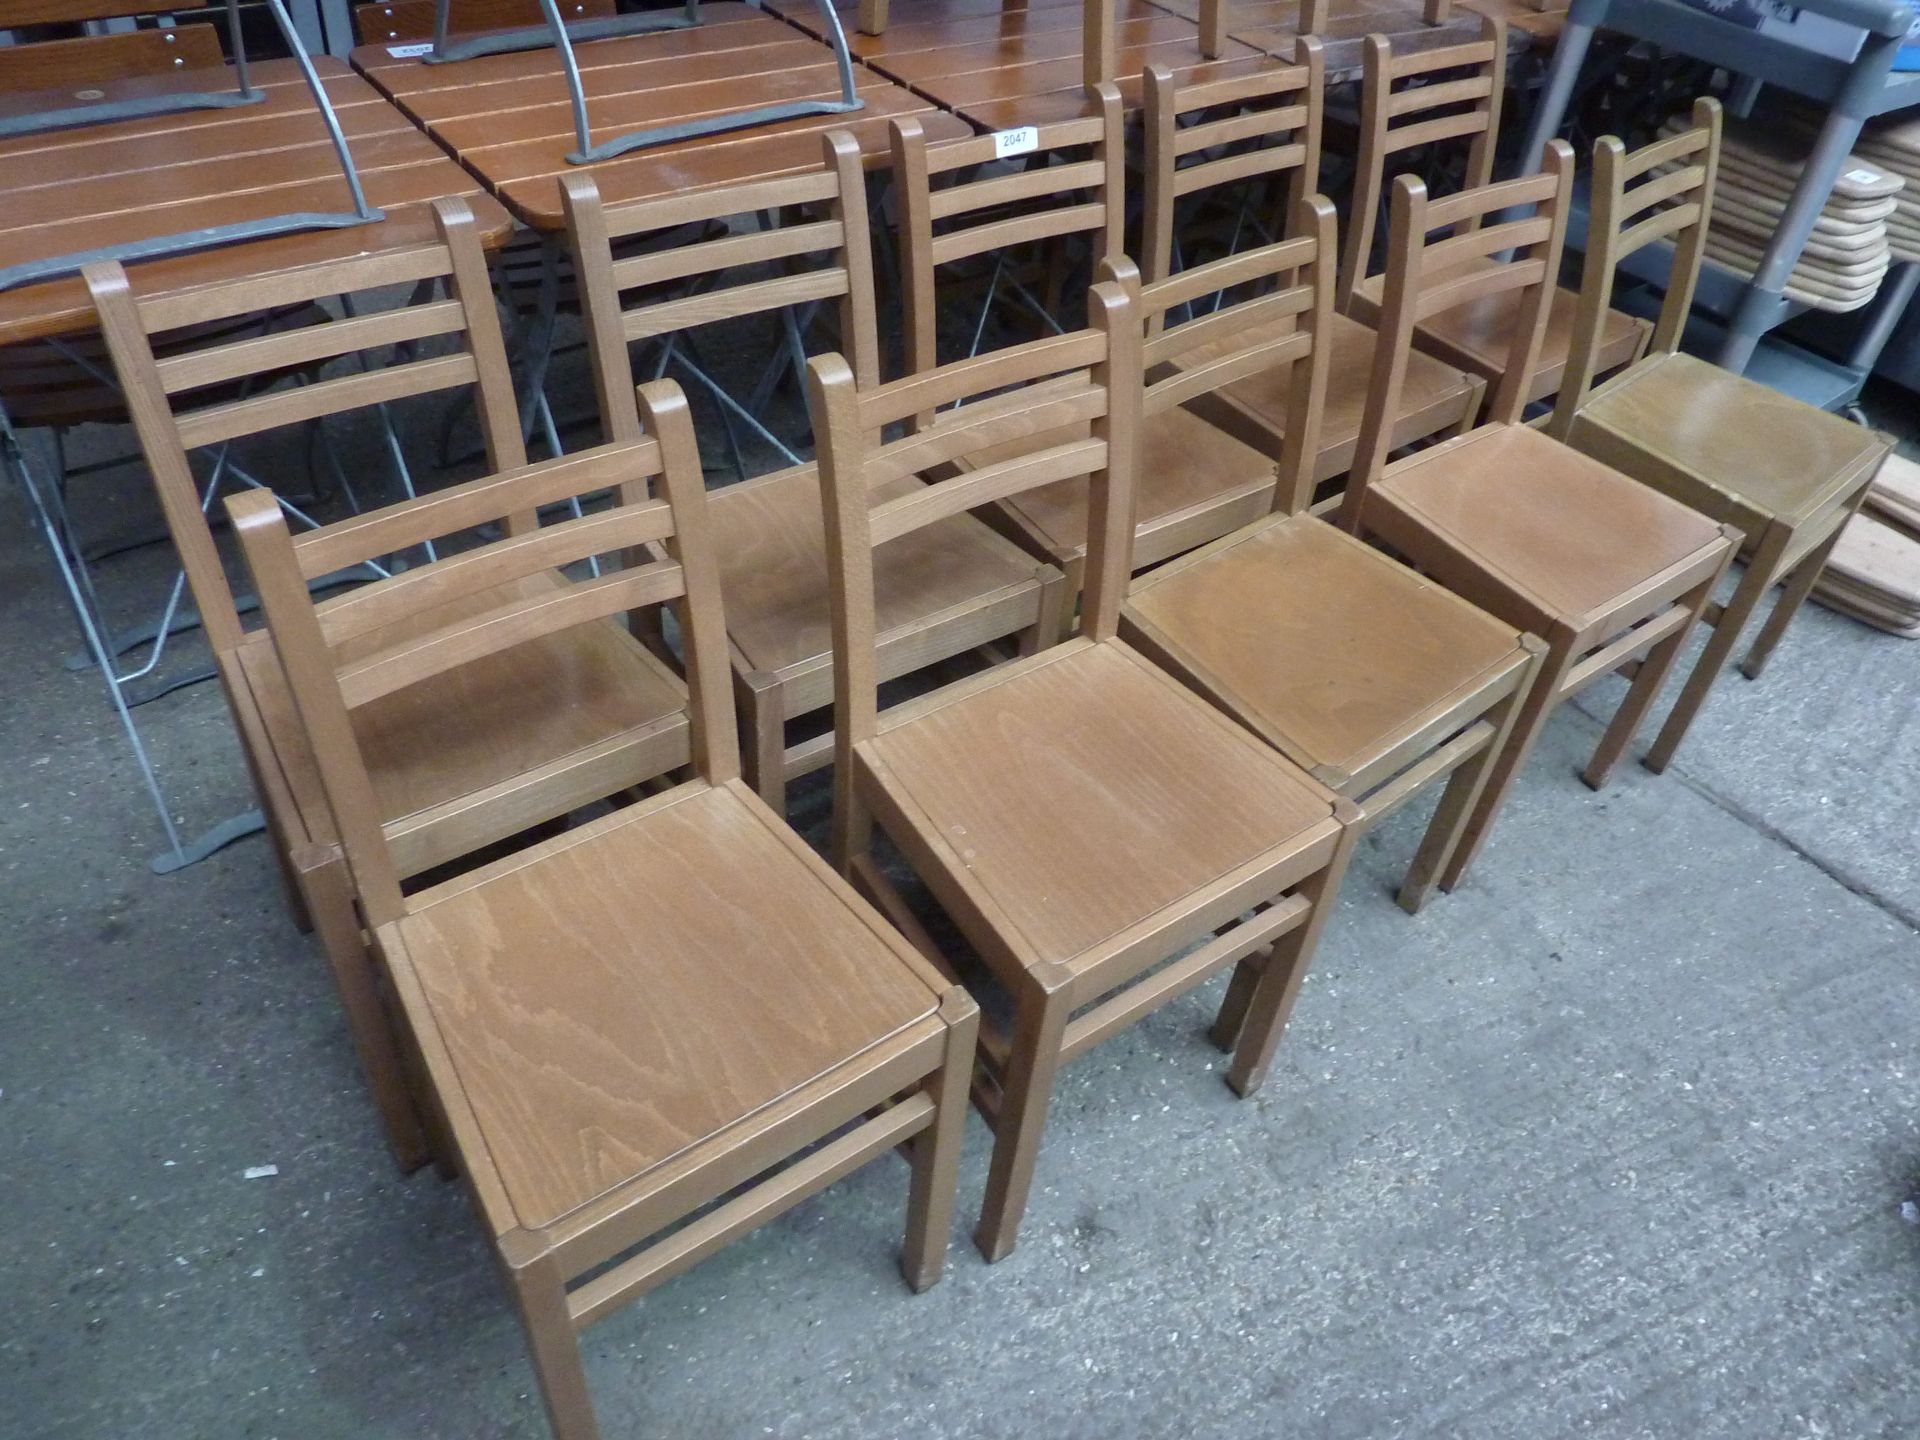 Ten wooden chairs.